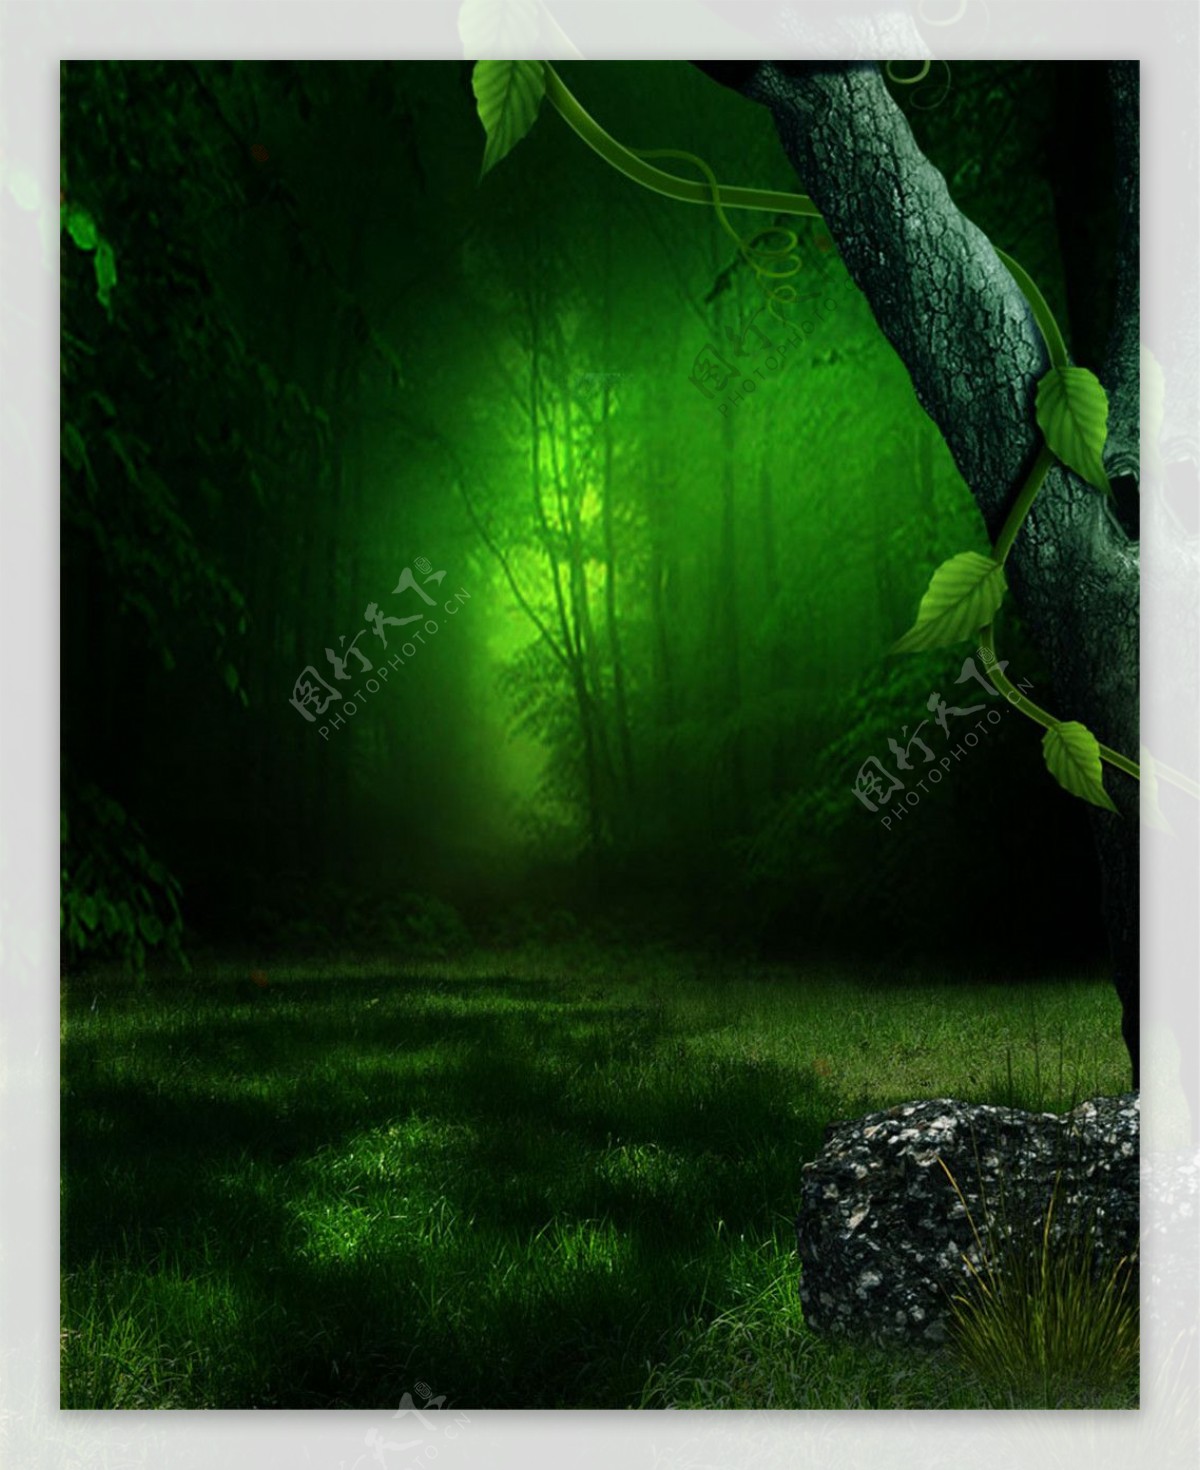 绿色森林背景图片